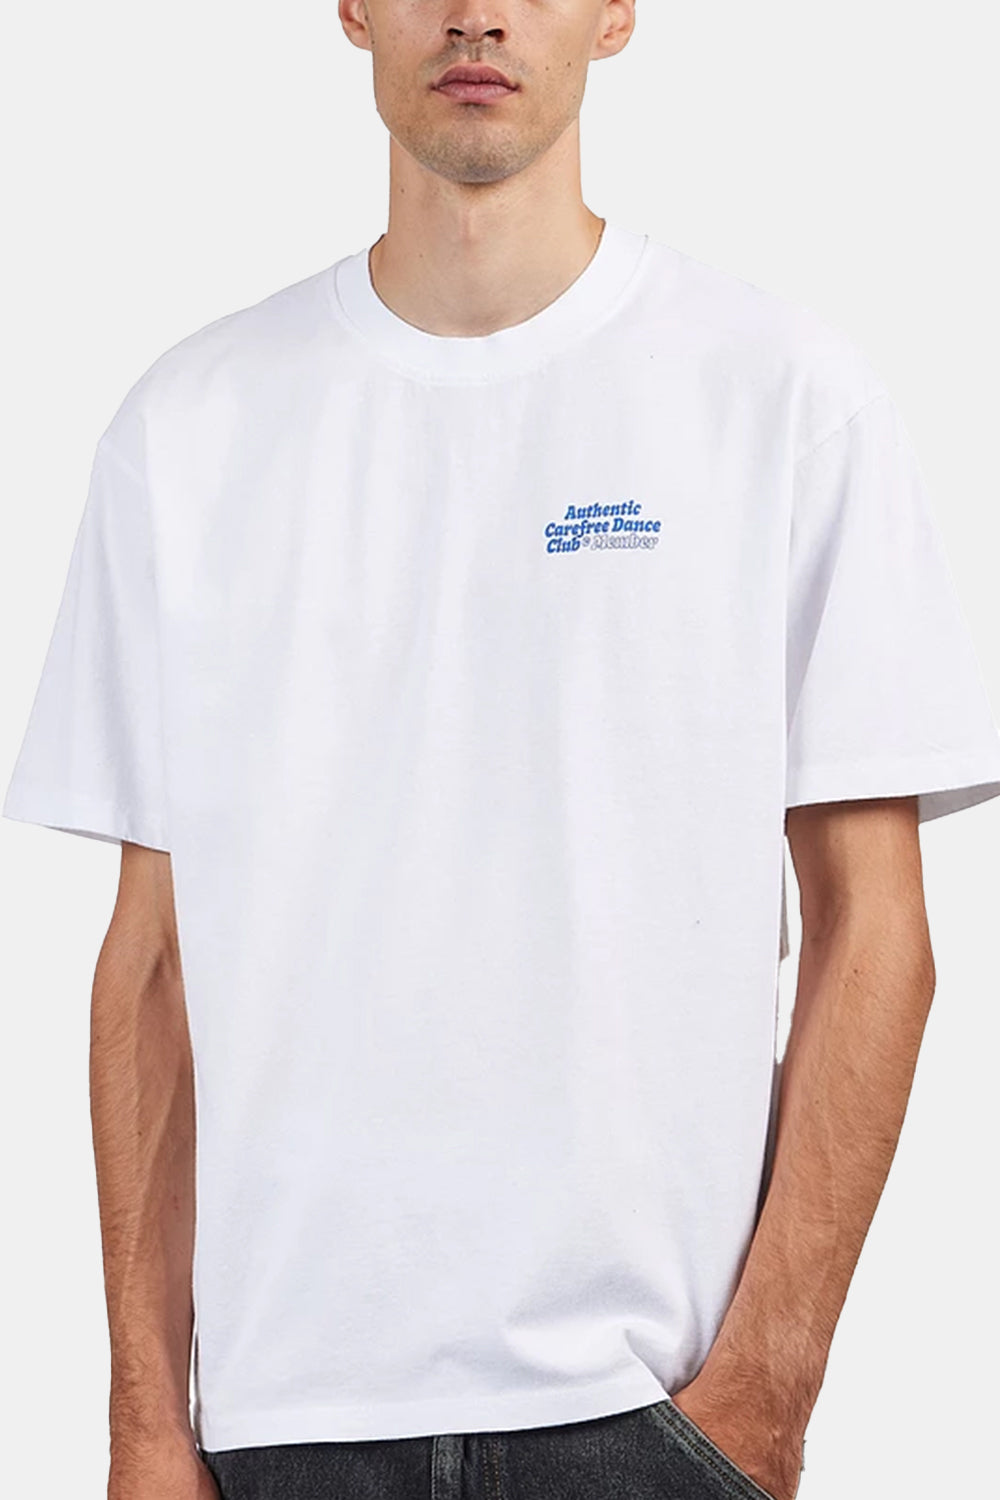 Edwin Carefree Dance Club T-Shirt (gewaschenes Weiß)